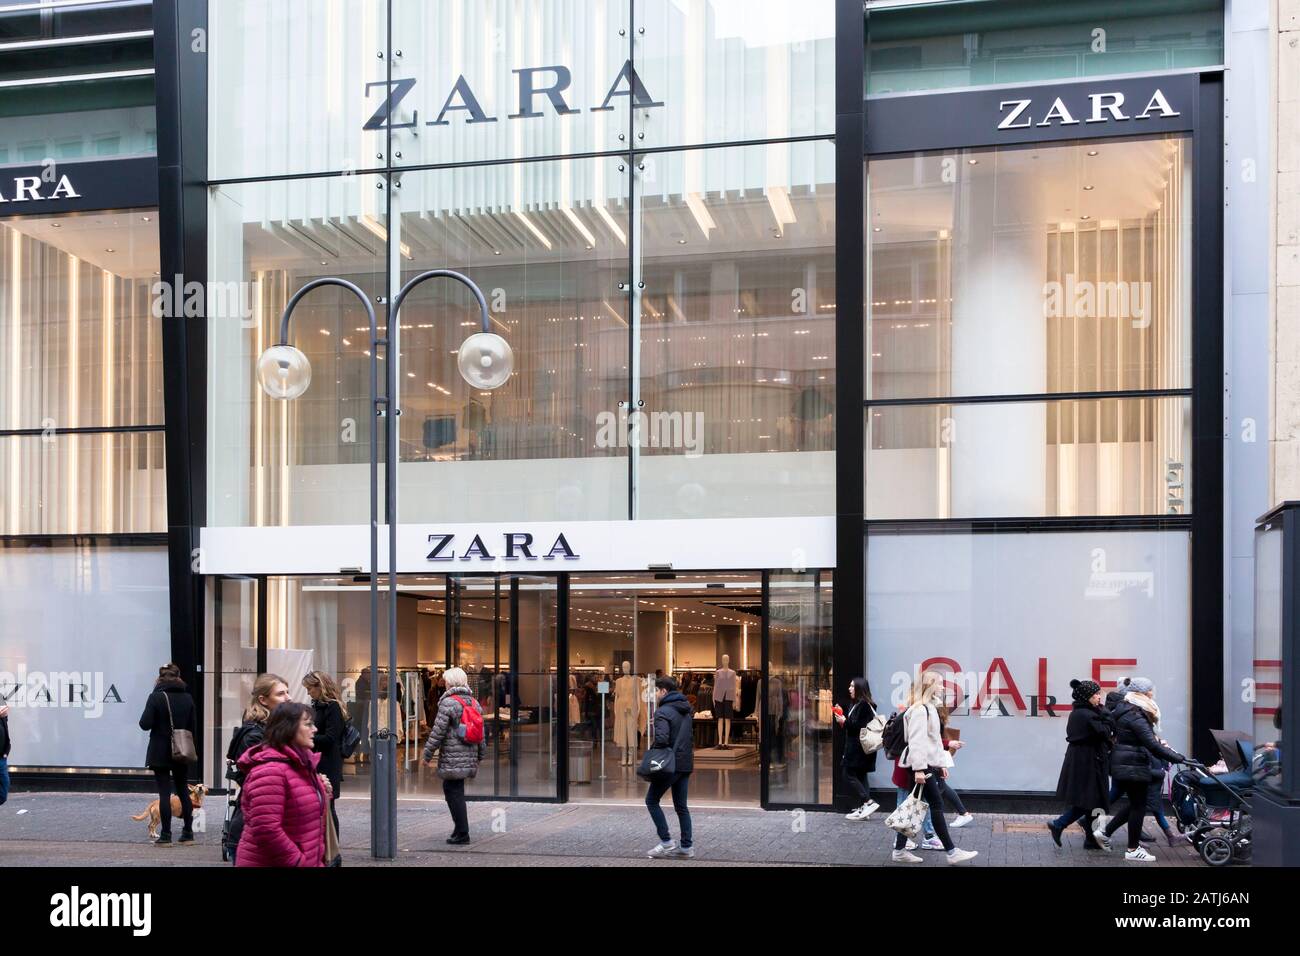 Negozio di moda Zara sulla via dello shopping Schildergasse, Colonia,  Germania. Modegeschaift Zara In Der Einkaufsstrasse Schildergasse, Koeln,  Deutschland Foto stock - Alamy